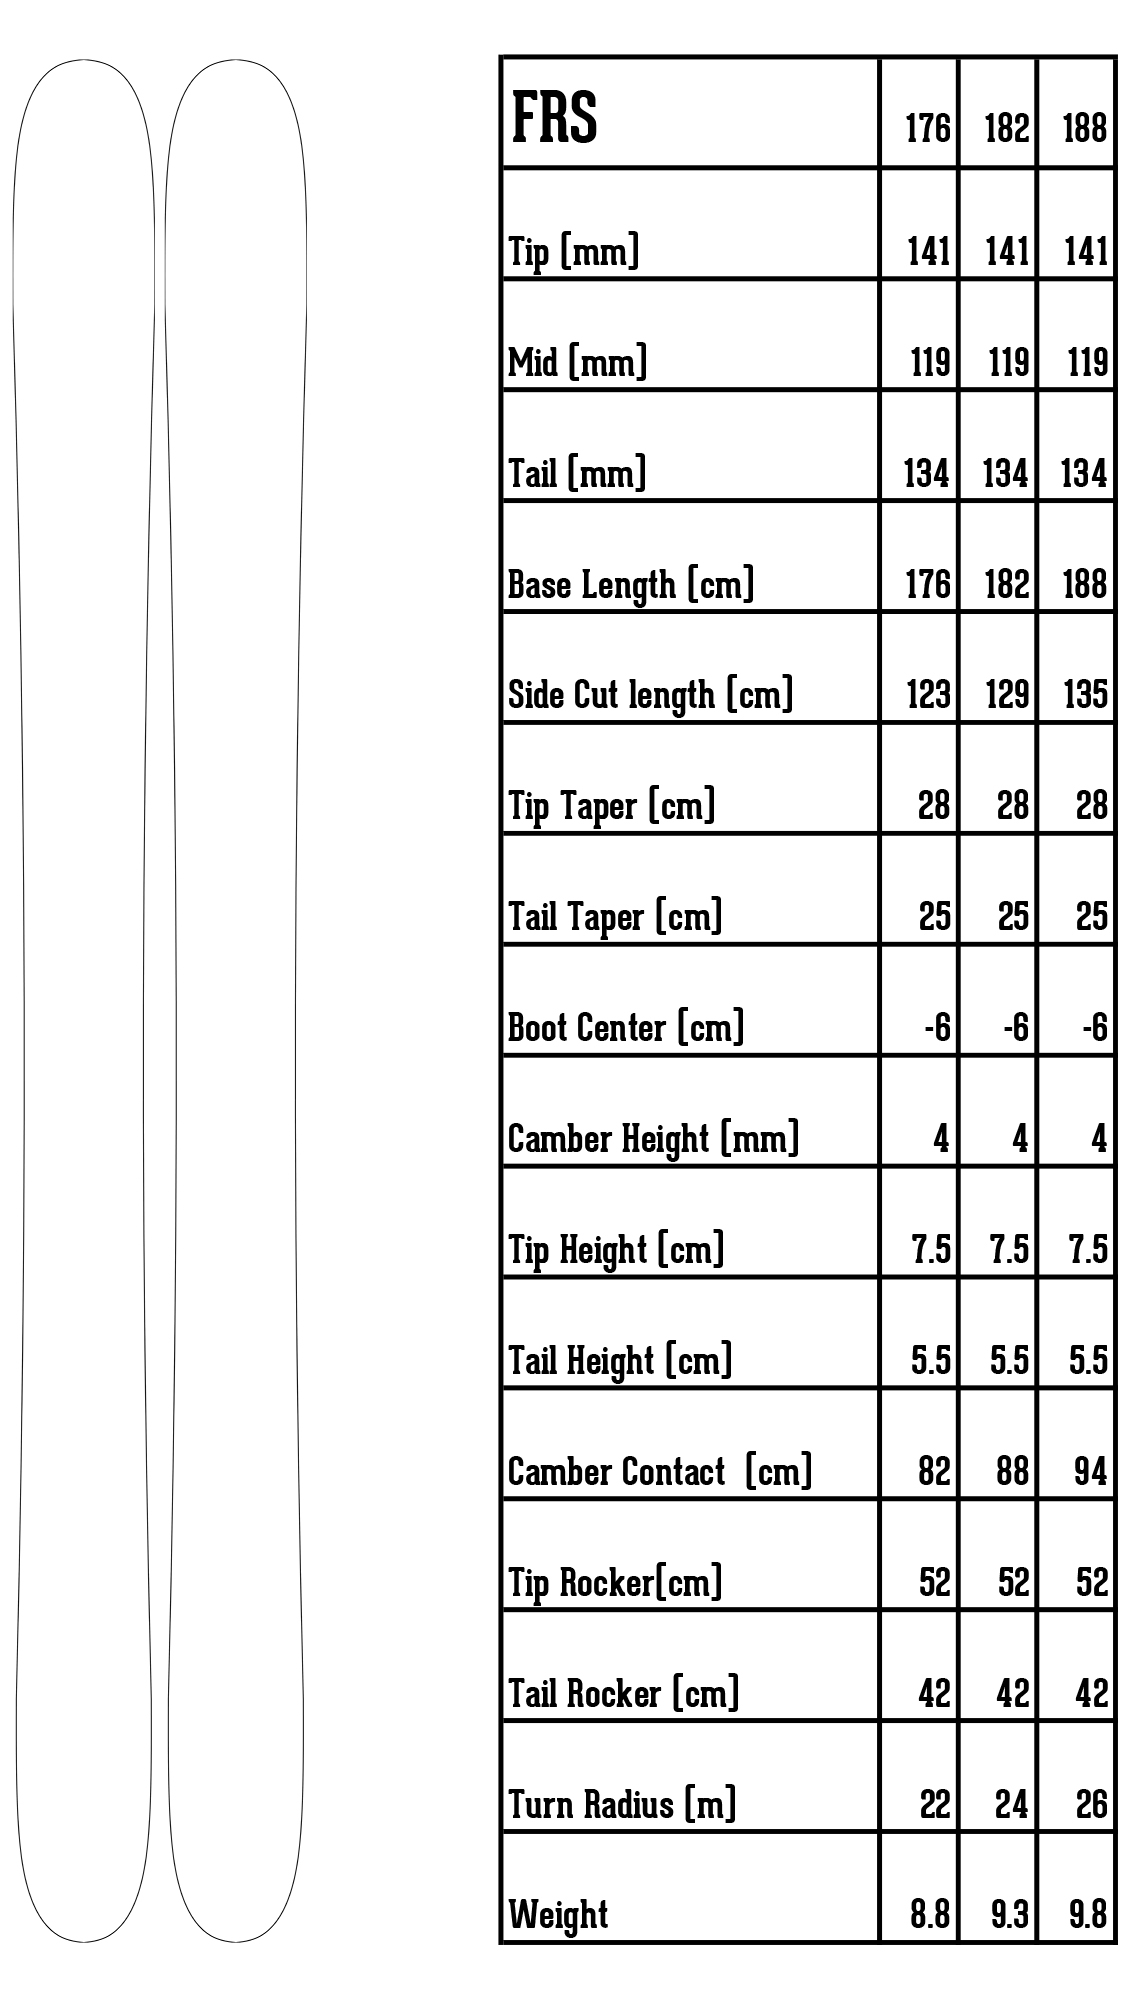 FRS ski specs chart spreadsheet showing ski info details